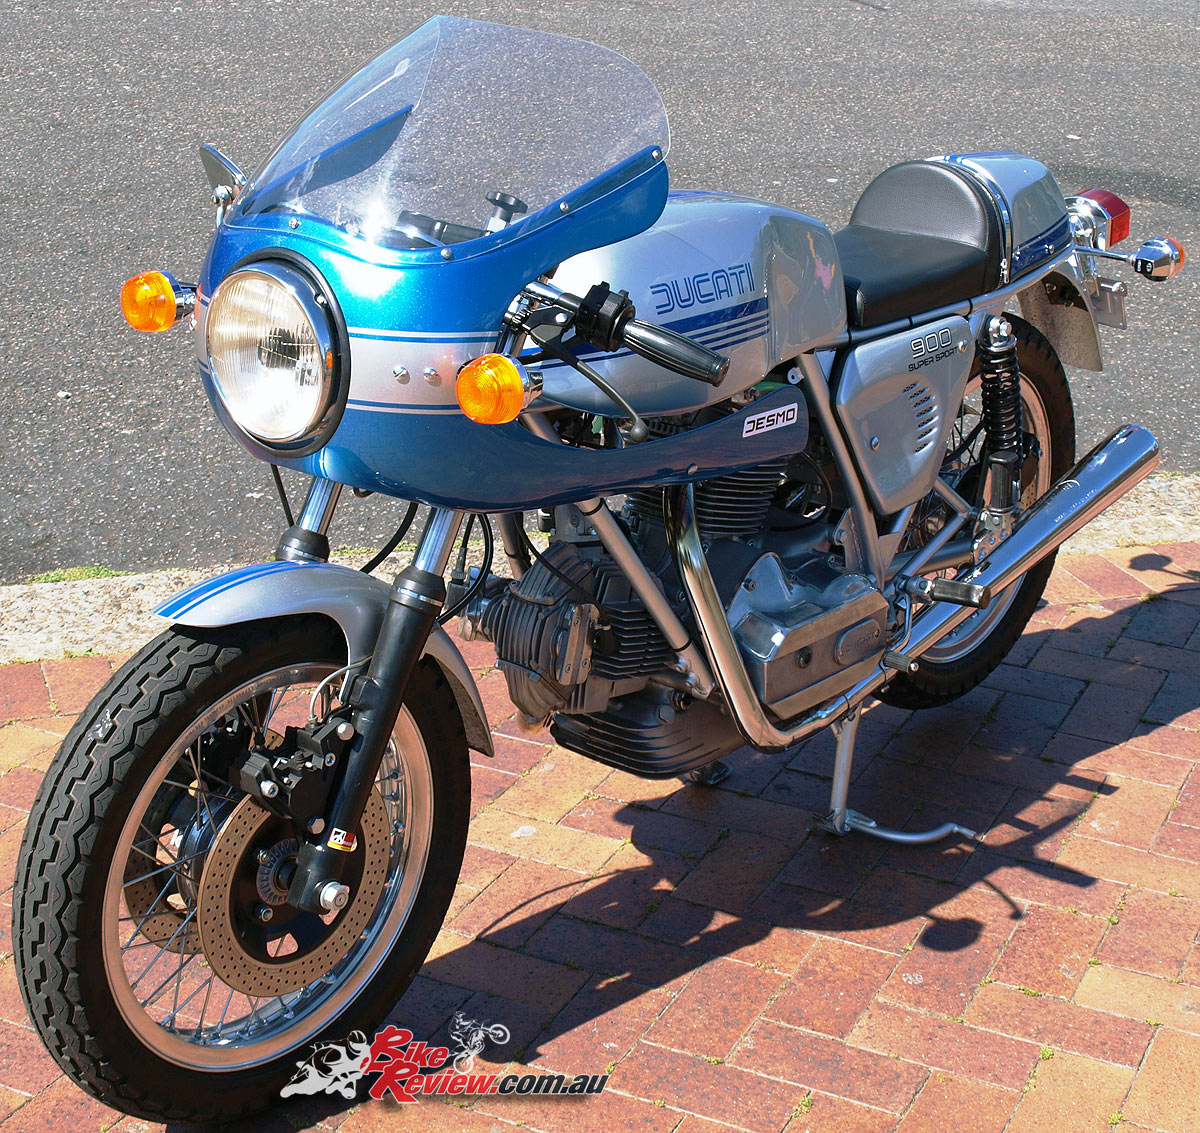 1977 Ducati 900 SS